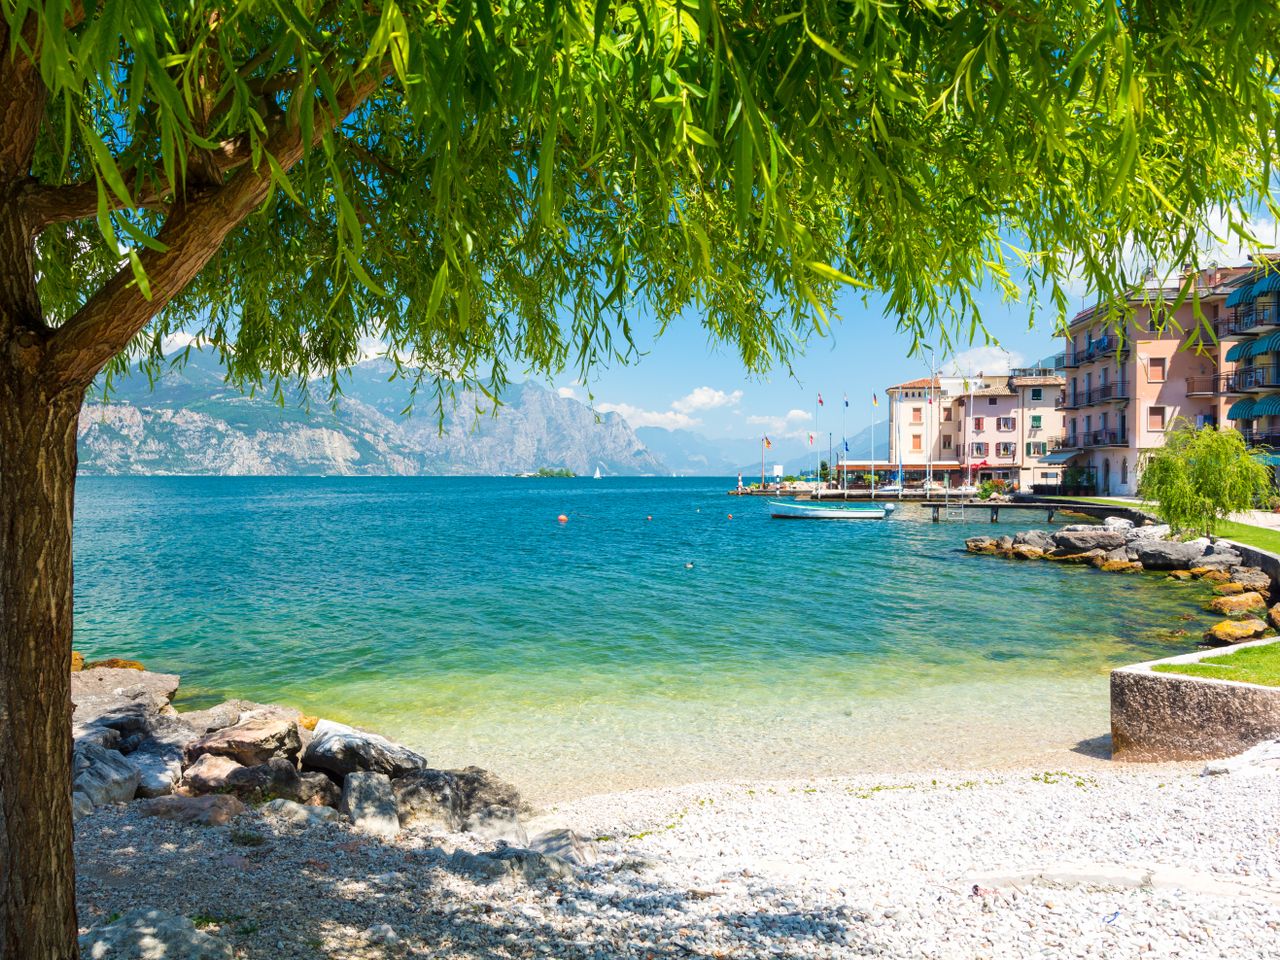 6 traumhafte Tage in Lazise am Gardasee mit Frühstück